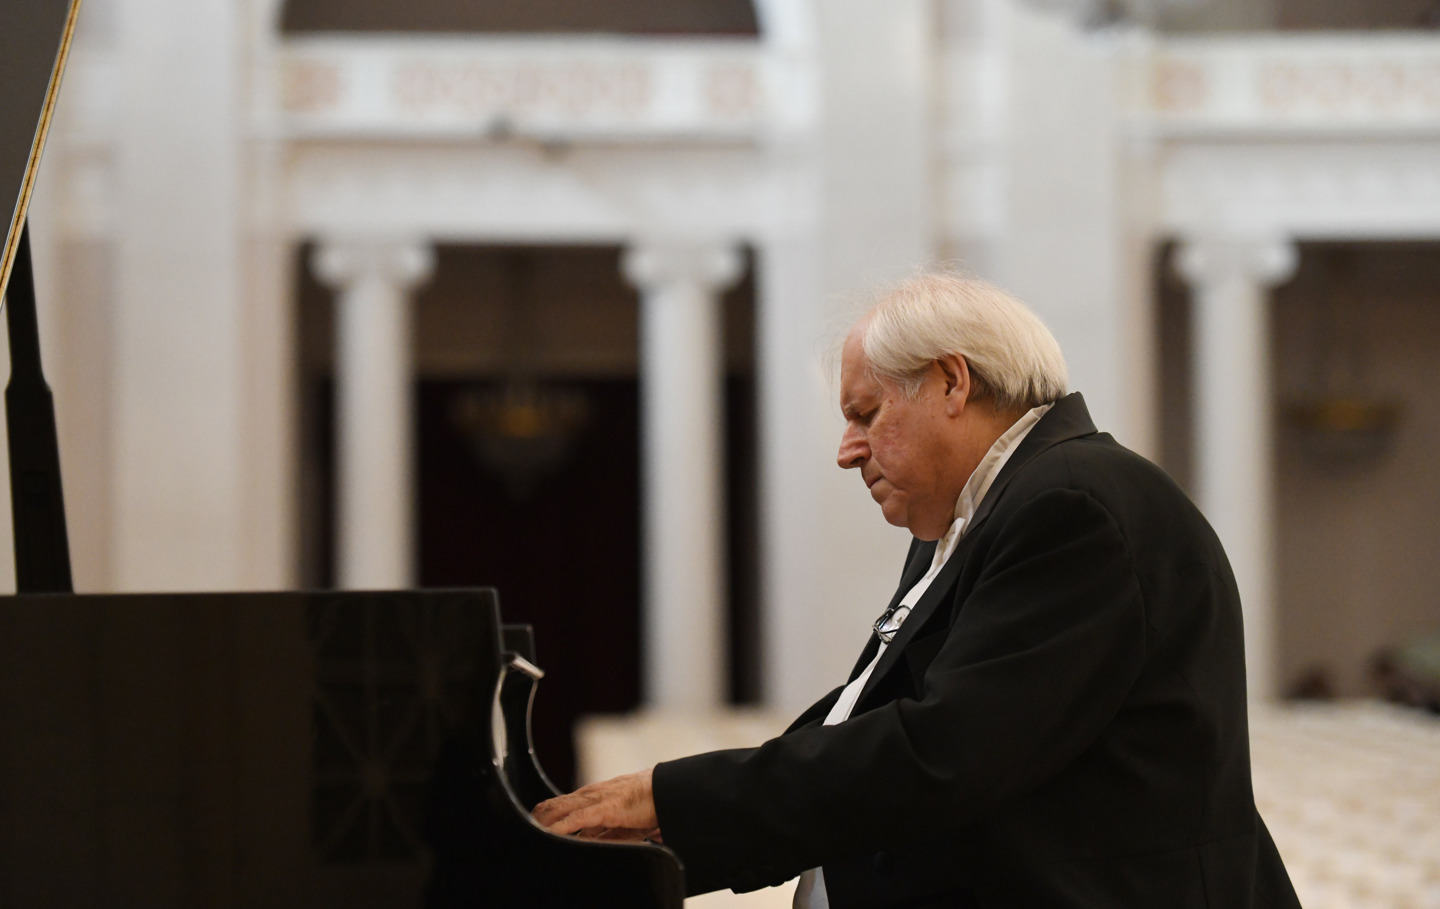 Pianist Grigory Sokolov